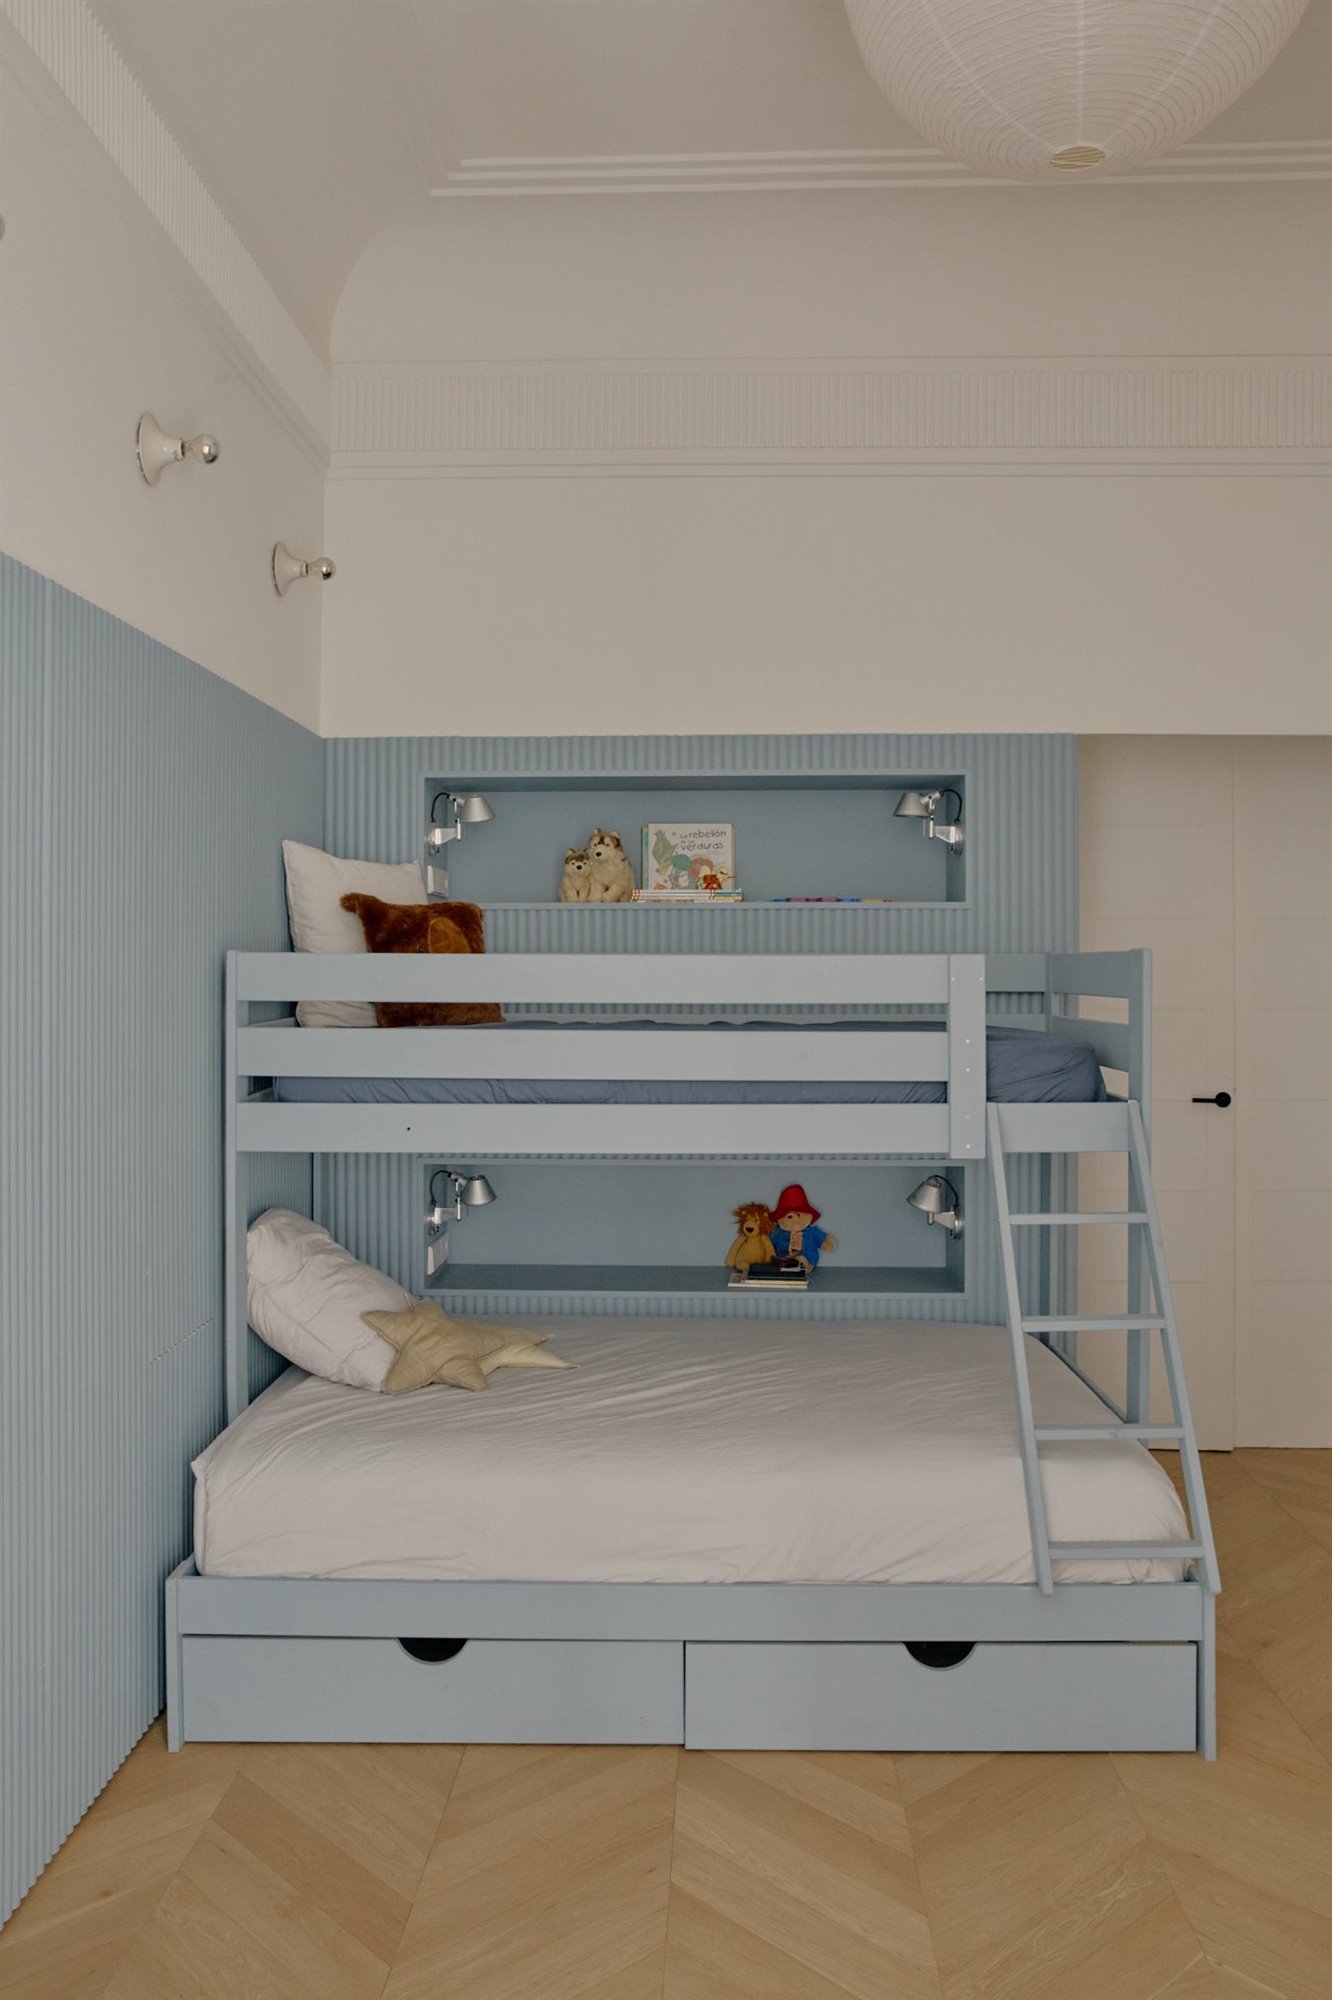 Dormitorio infantil azul